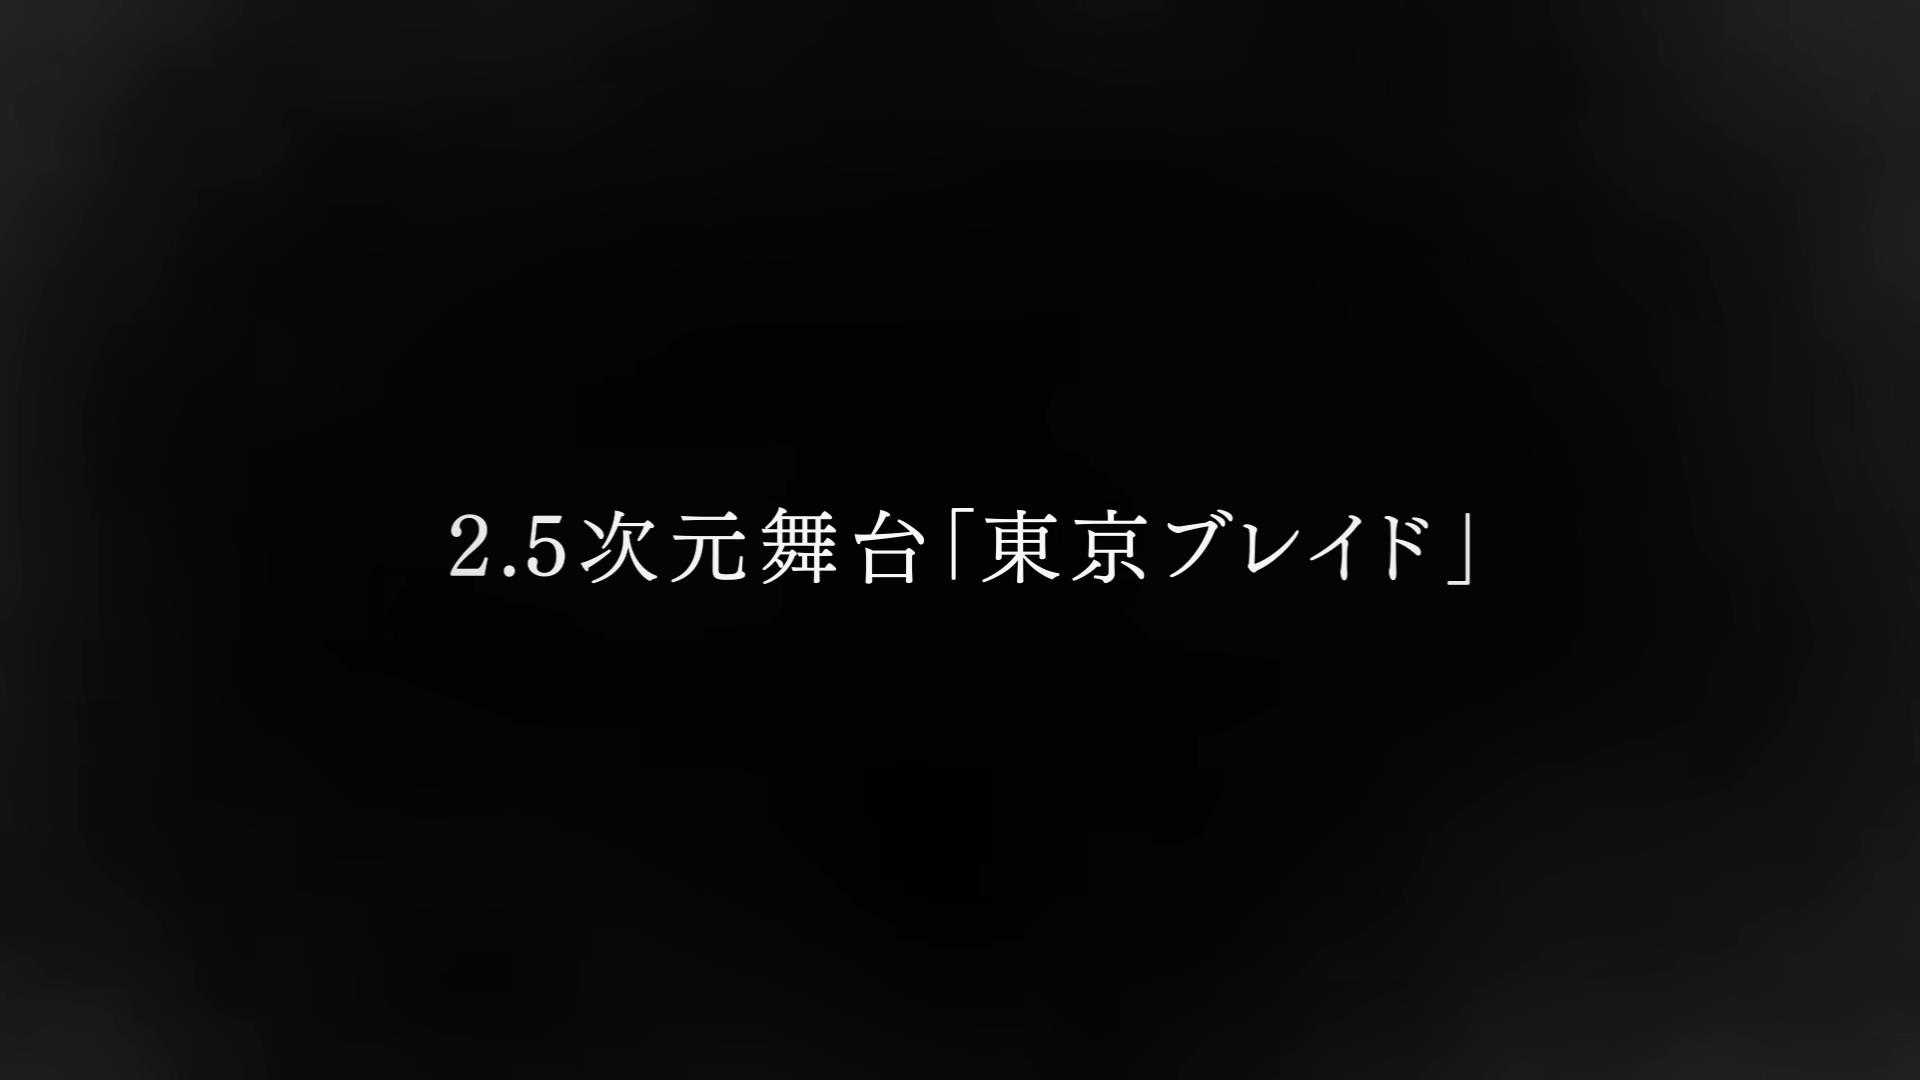 《我推的孩子》动画第二季首个宣传PV公布 7月3日开播